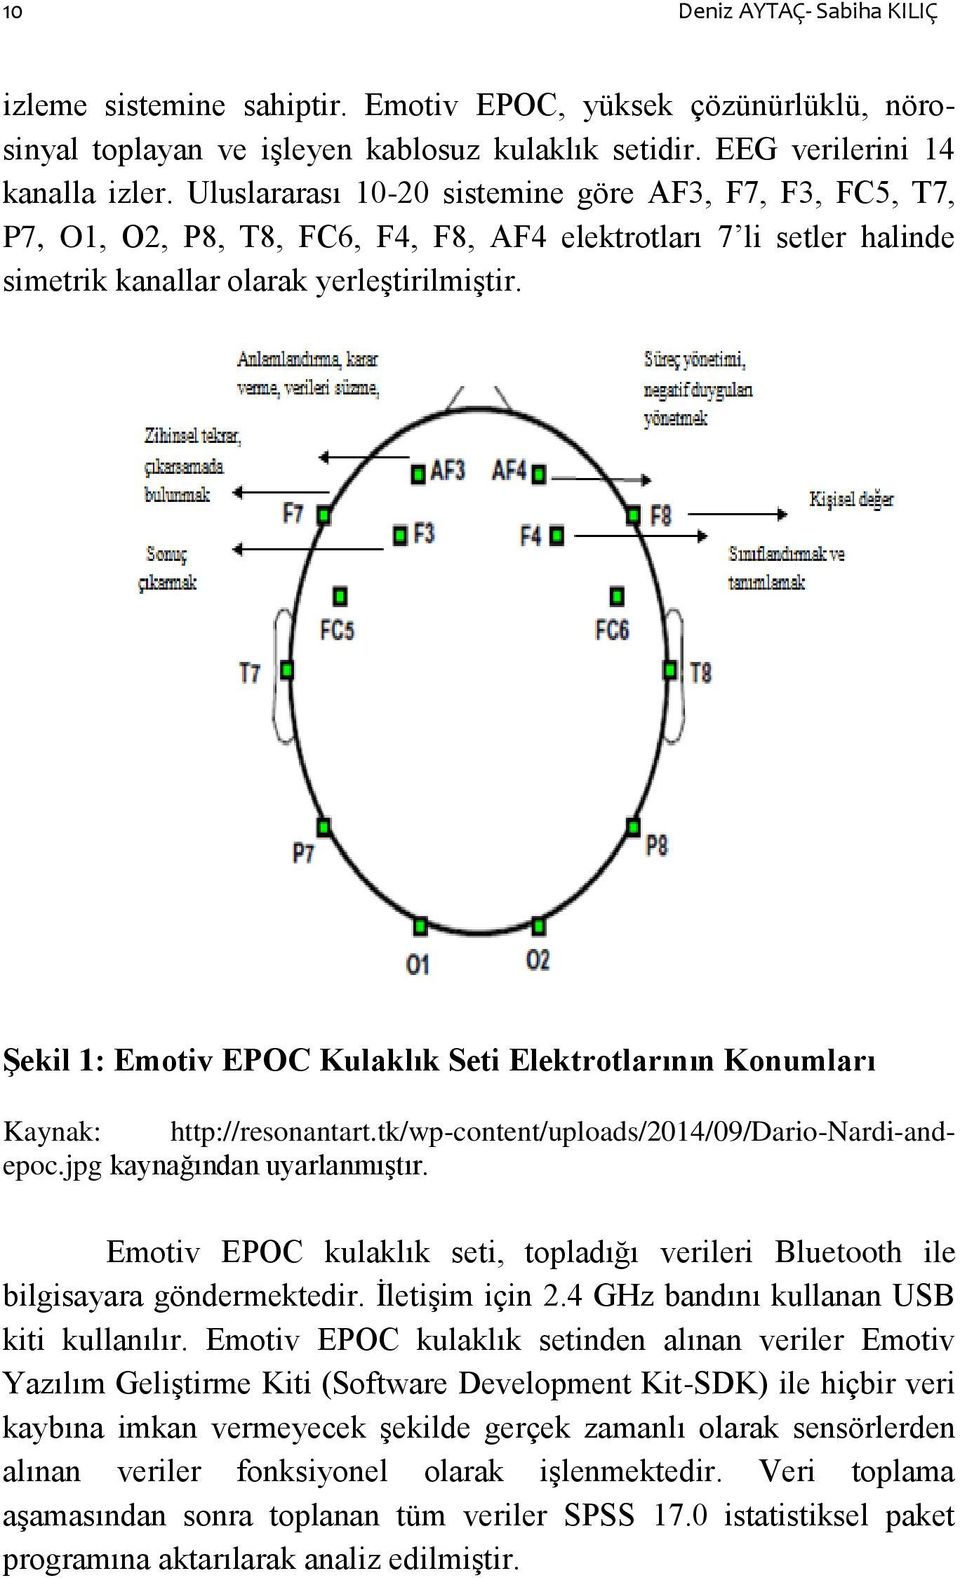 ġekil 1: Emotiv EPOC Kulaklık Seti Elektrotlarının Konumları Kaynak: http://resonantart.tk/wp-content/uploads/2014/09/dario-nardi-andepoc.jpg kaynağından uyarlanmıģtır.